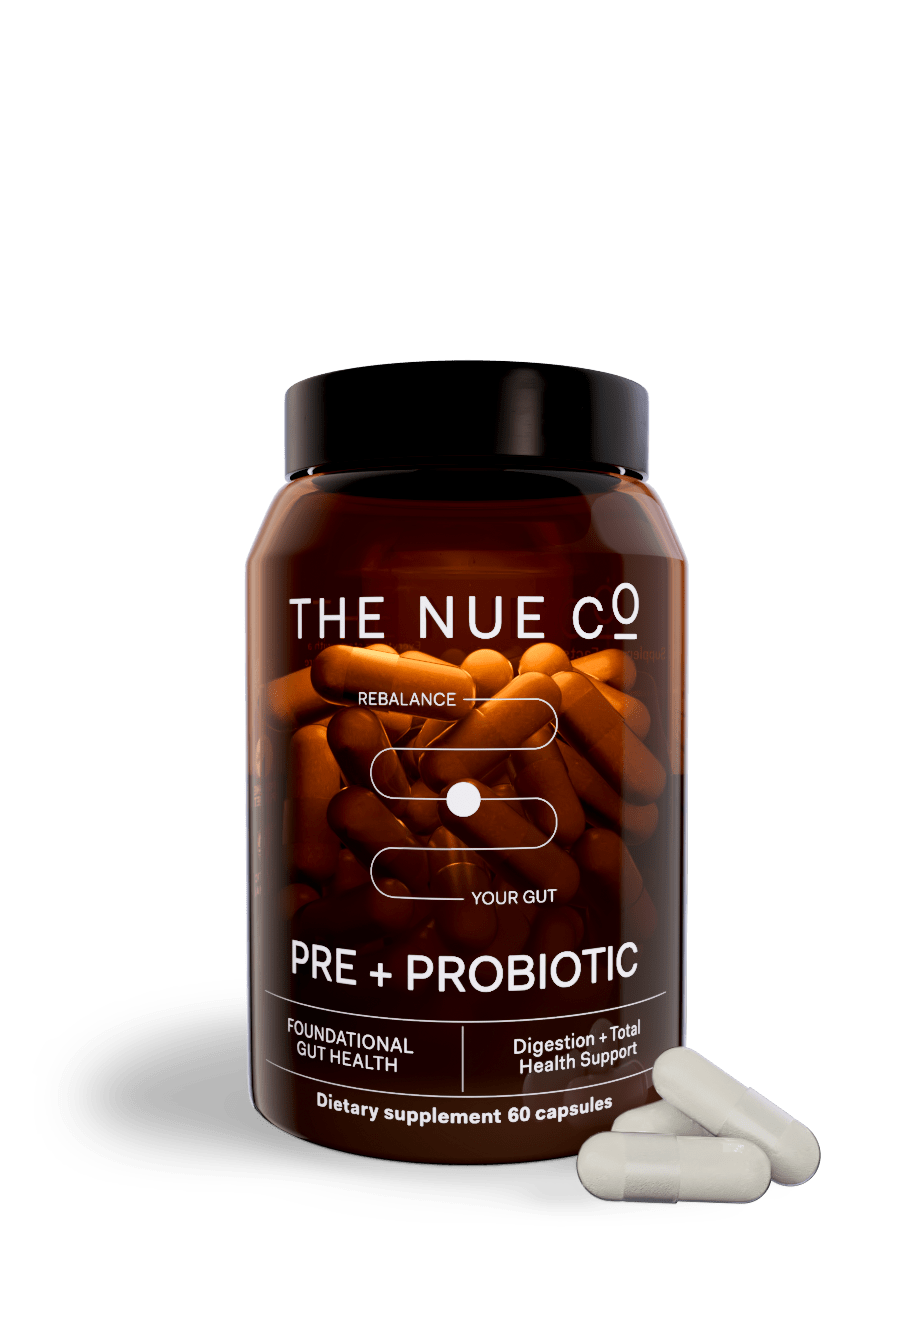 PREBIOTIC + PROBIOTIC single The Nue Co. 